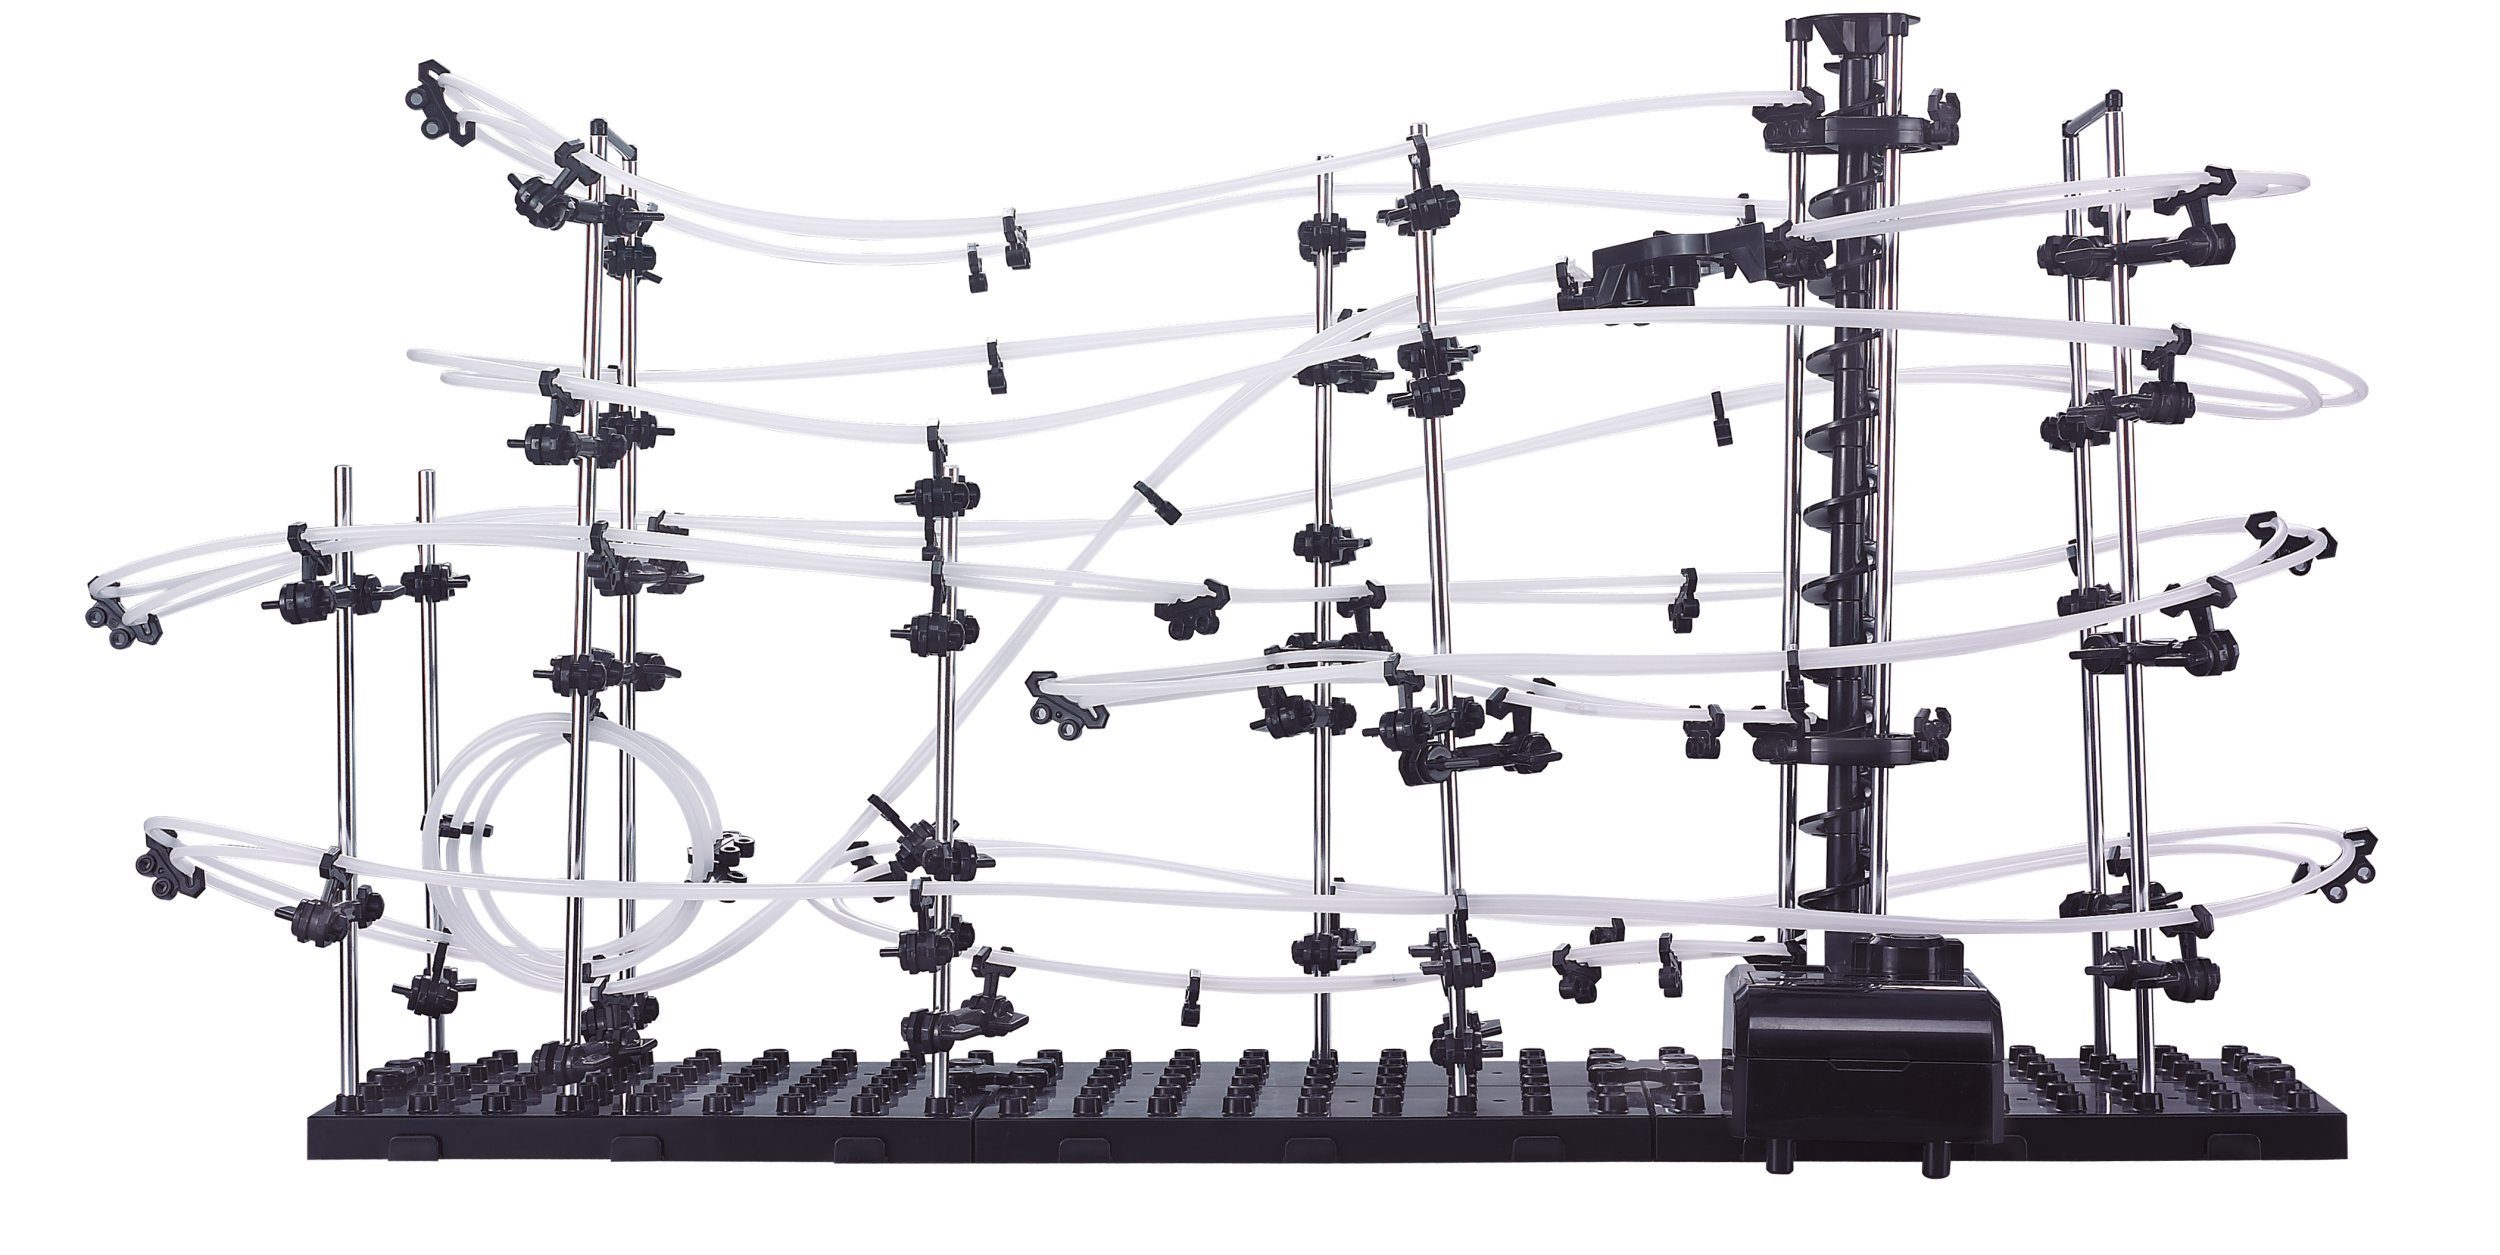 Selva Technik 3D-Puzzle Star Coaster Kugel-Achterbahn Level 3, 343 Teile, Puzzleteile